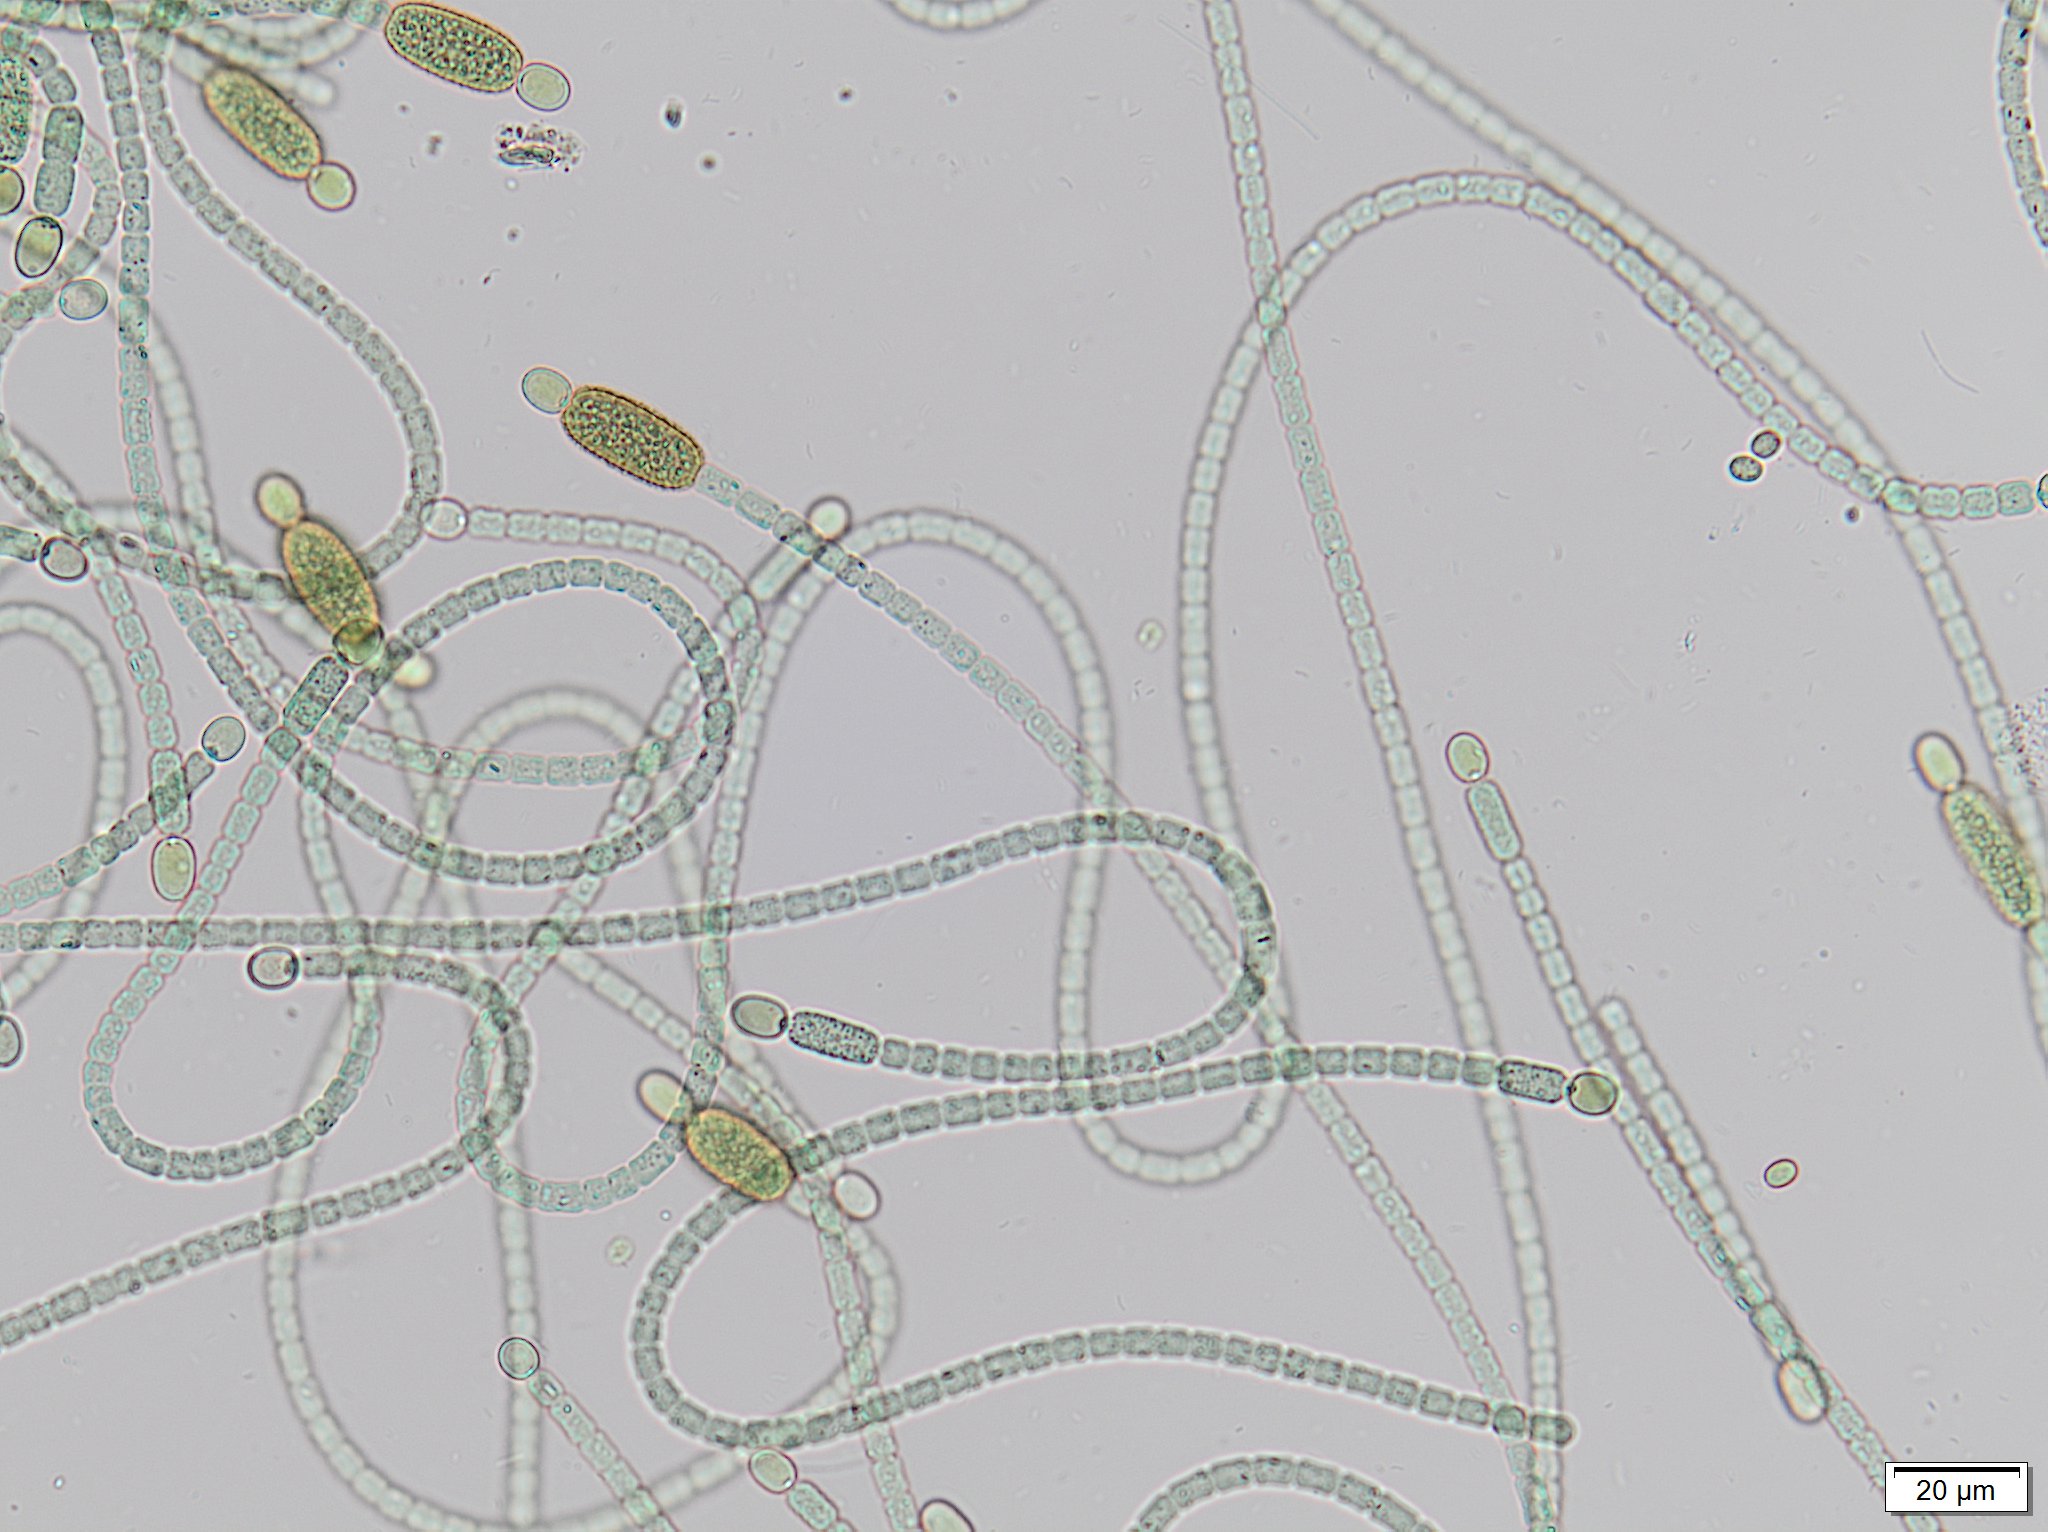 algae taxonomist looking at algae under a microscope